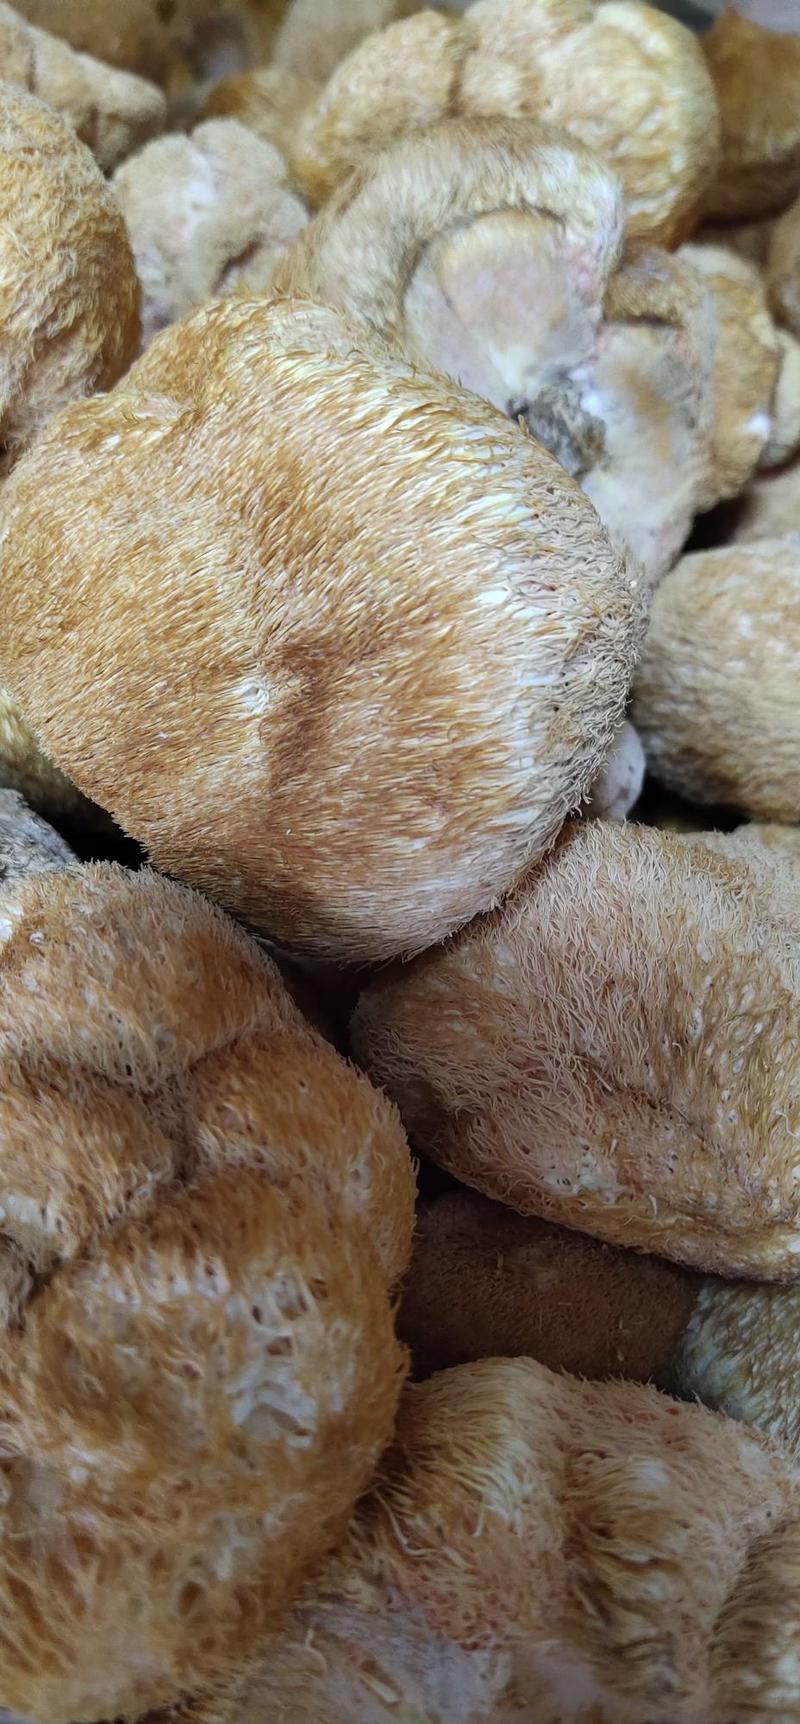 猴头菇东北猴头菇干货500g长白山特产农家蘑菇深山野生种